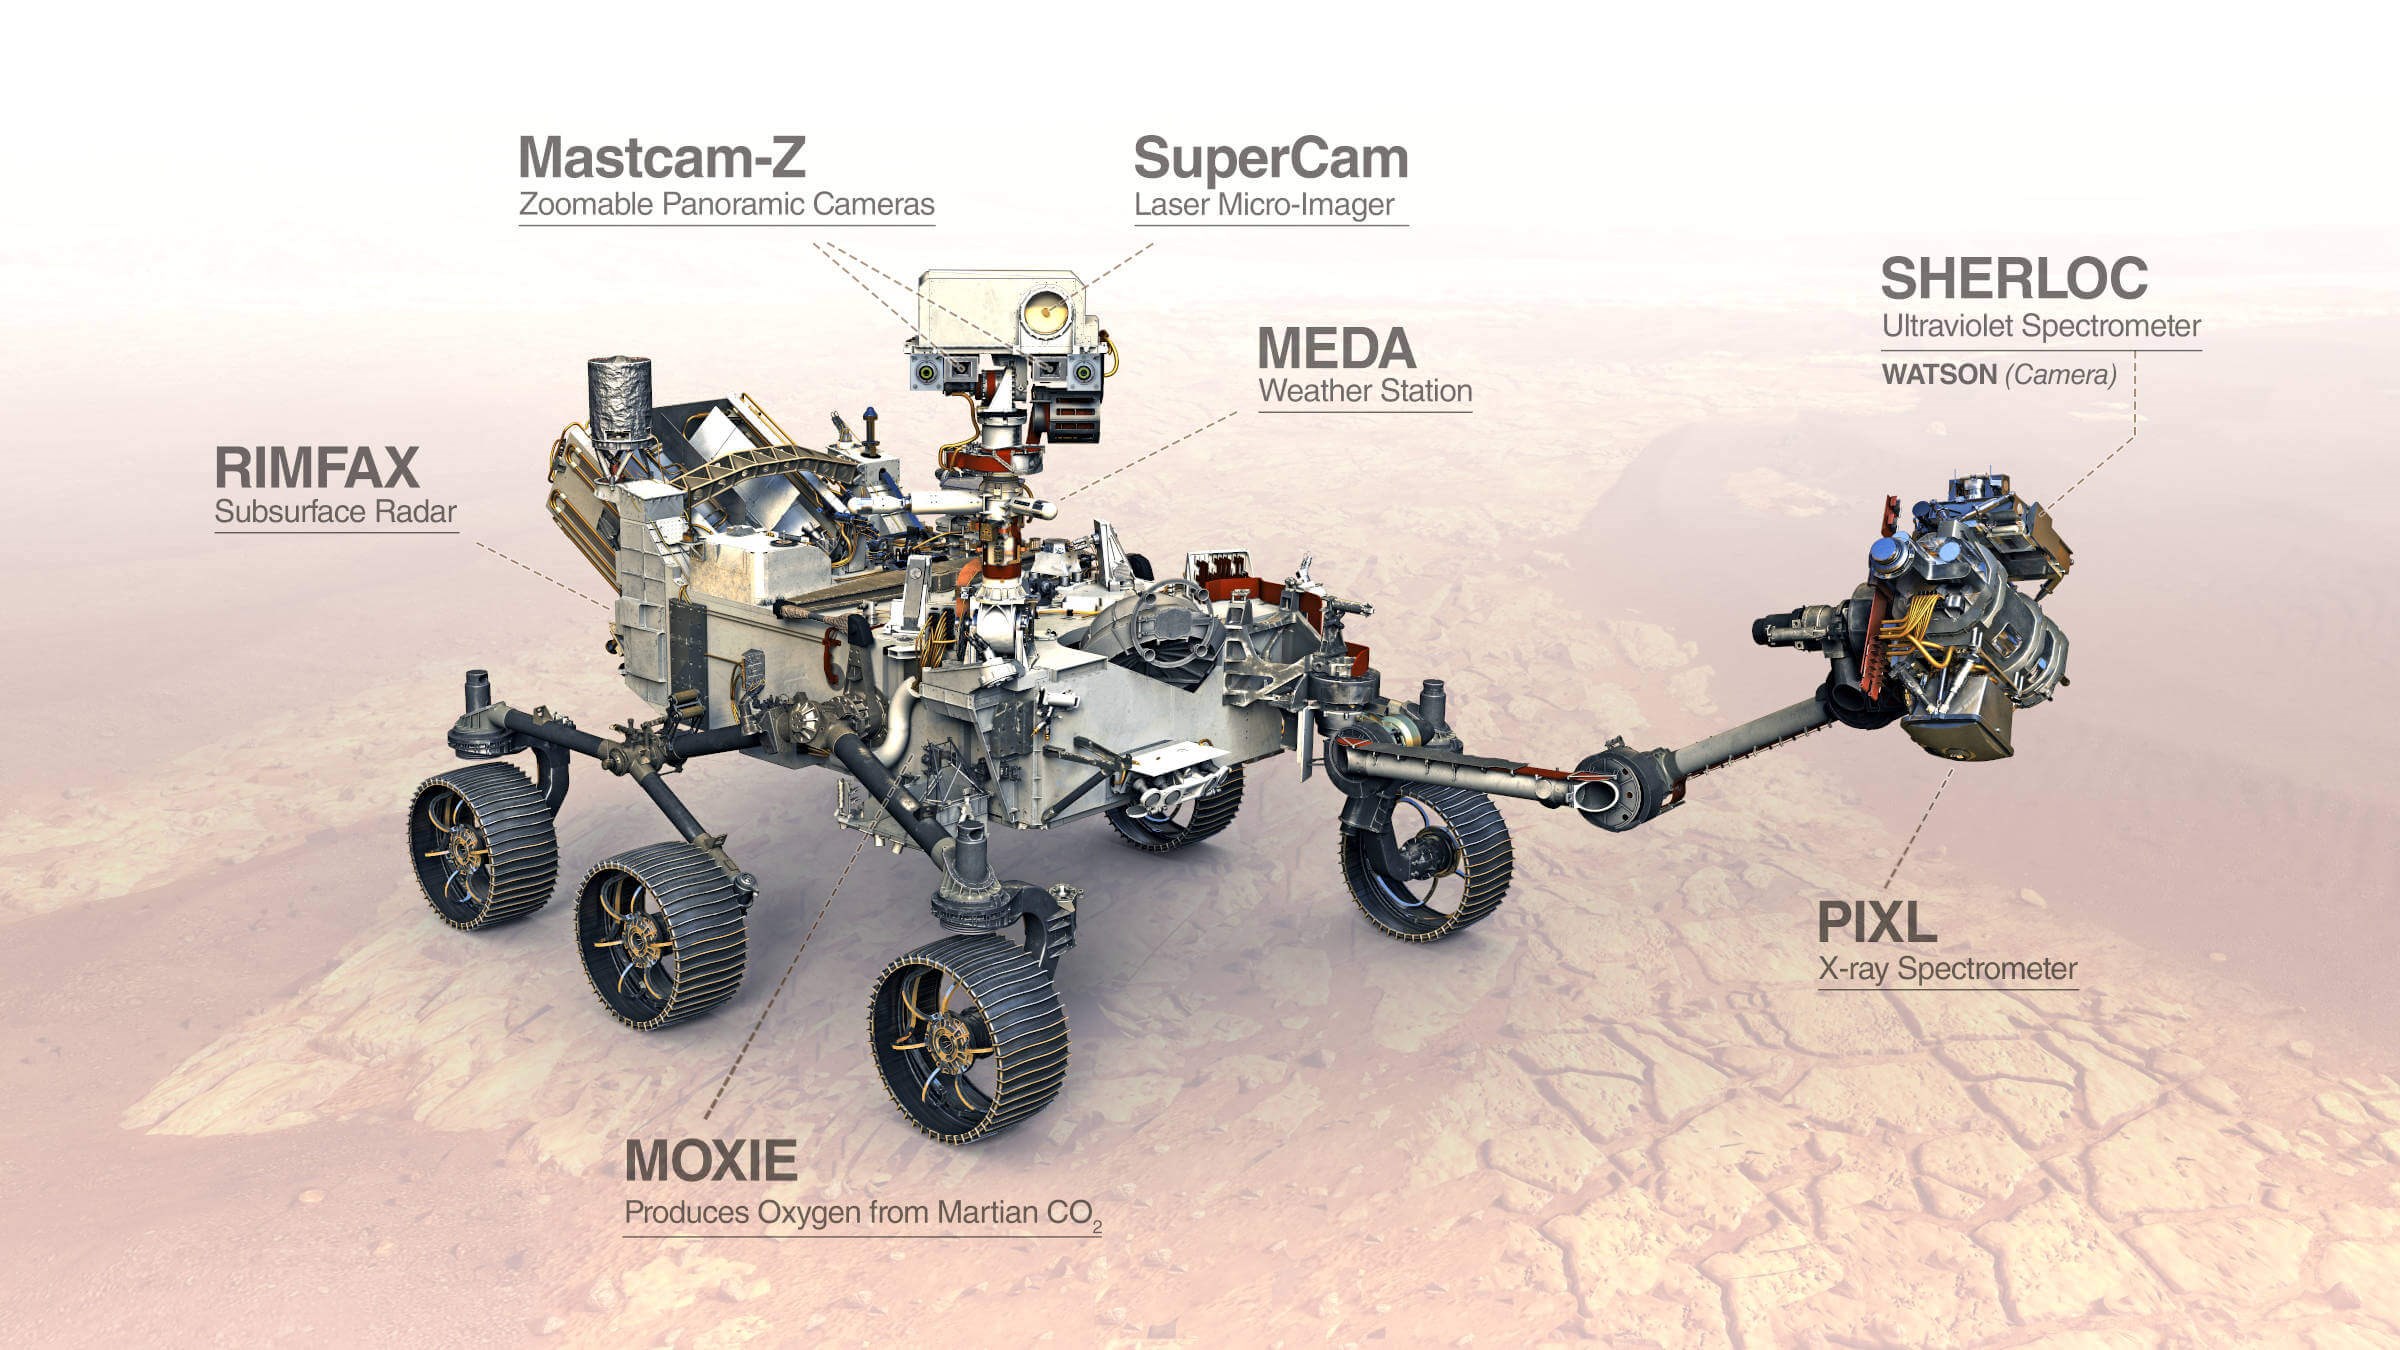 NASA'nın Mars'ta 'teknoloji şovu' yapacağı Perseverance görevi bugün fırlatılıyor